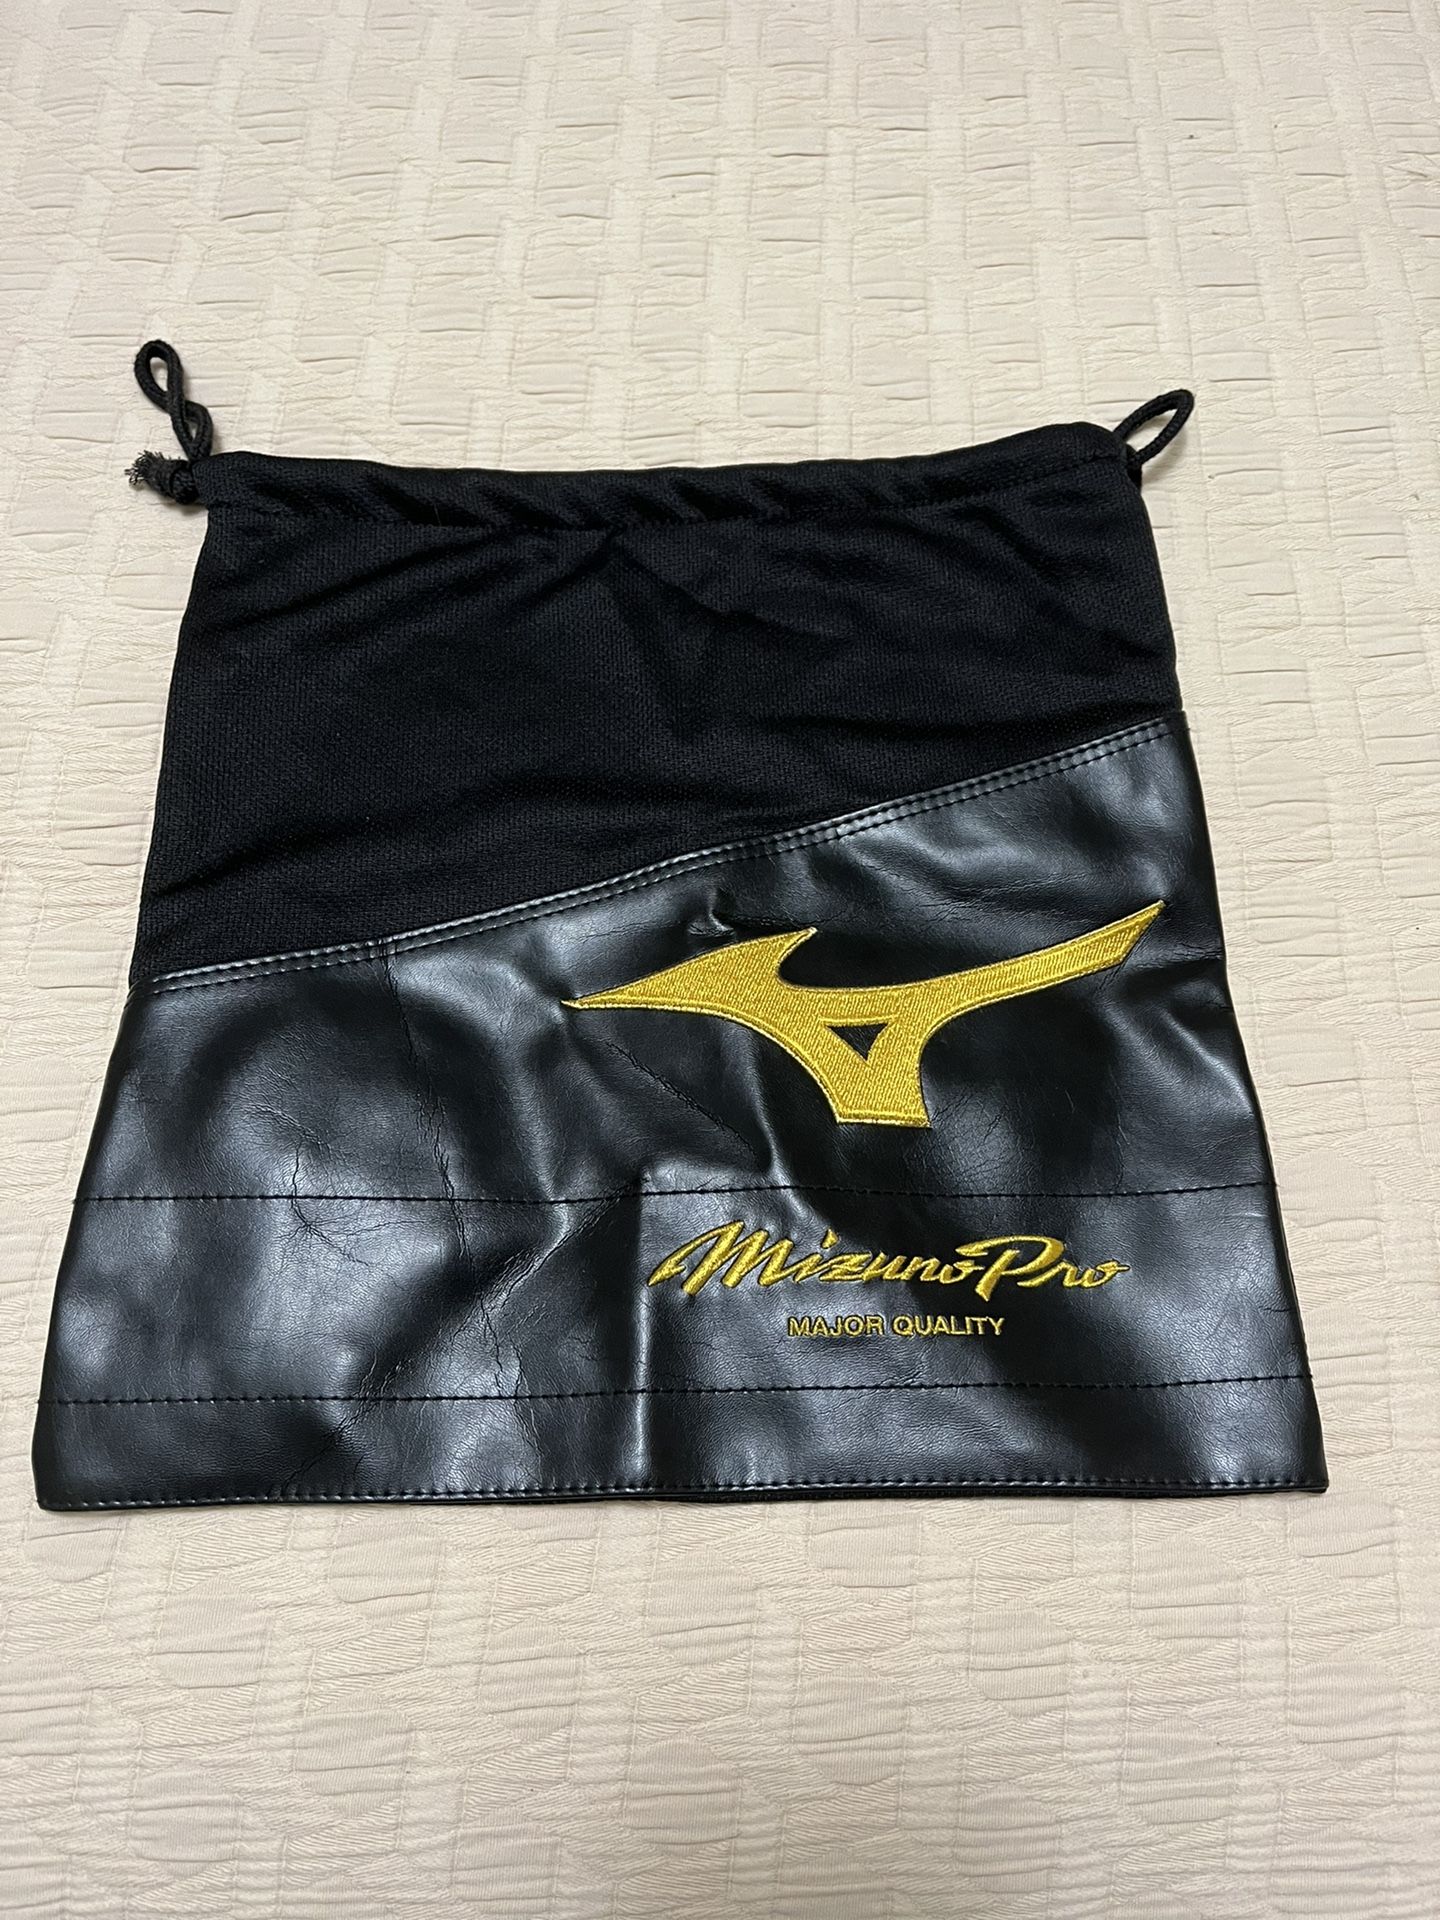 Mizuno Pro 14 X 13 Inch Baseball/Softball Drawstring Glove Bag